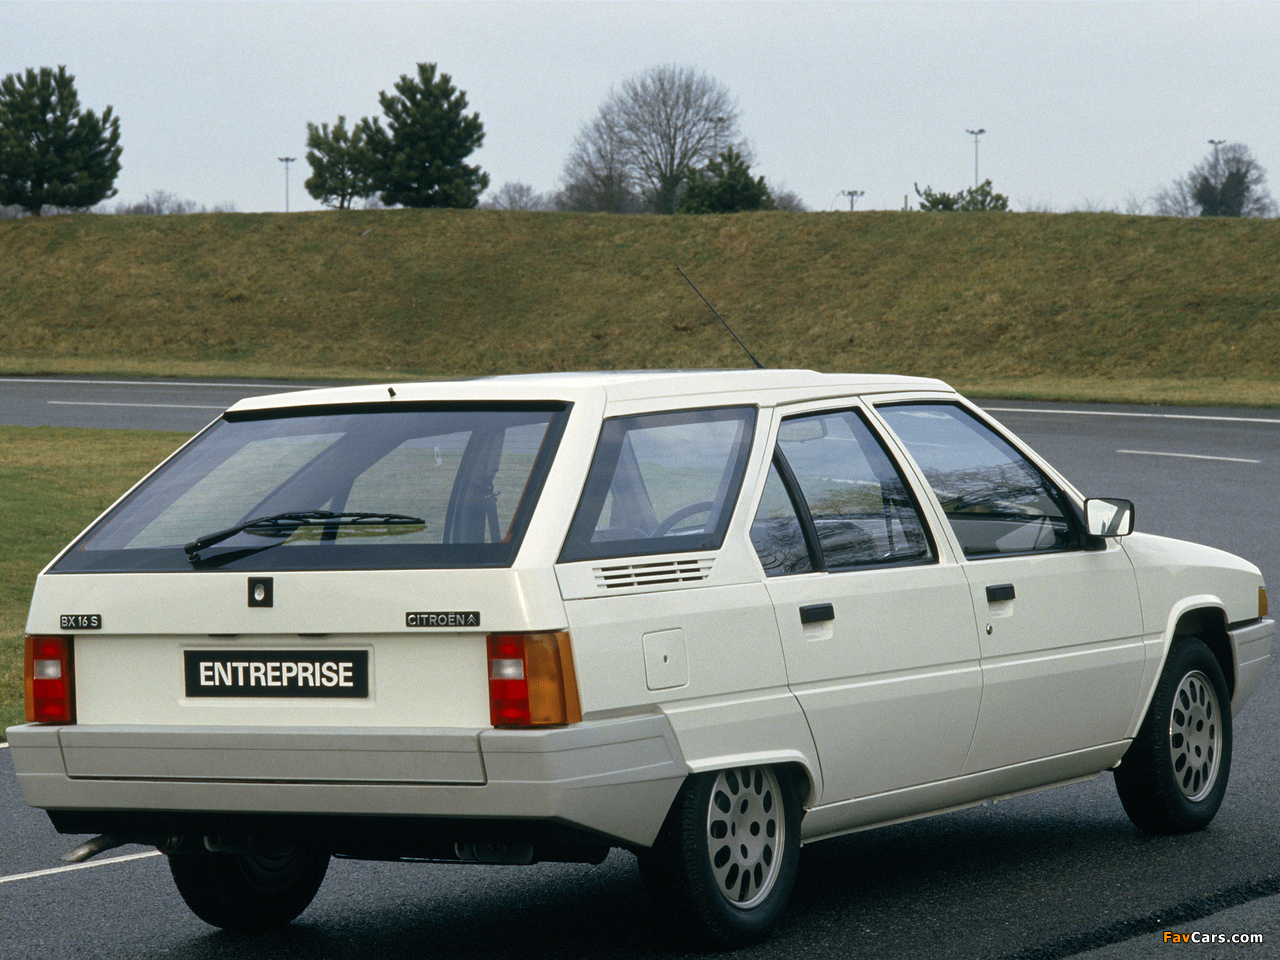 Citroën BX Break 1985–86 pictures (1280 x 960)